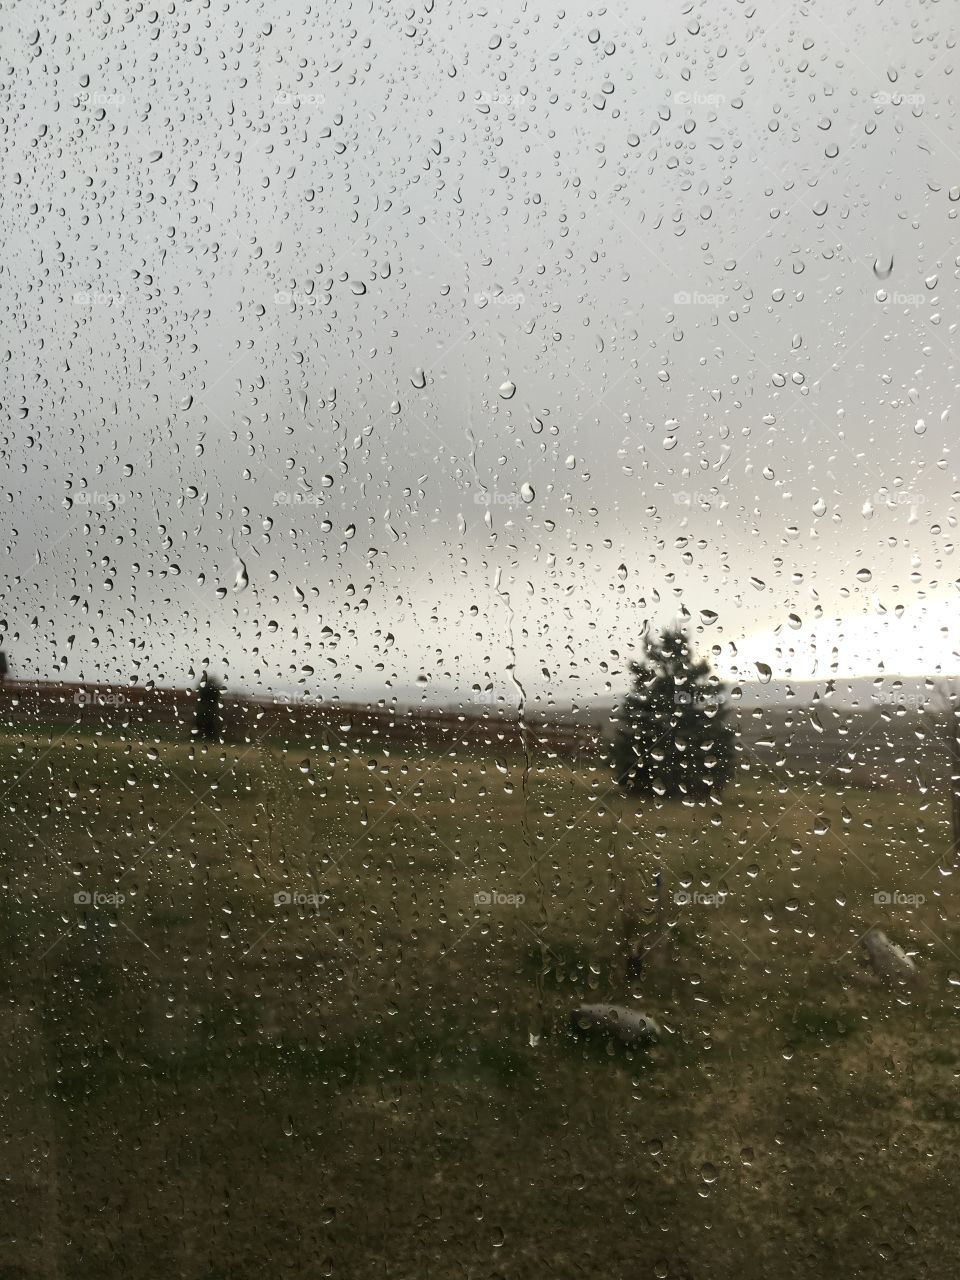 Rain on the window.